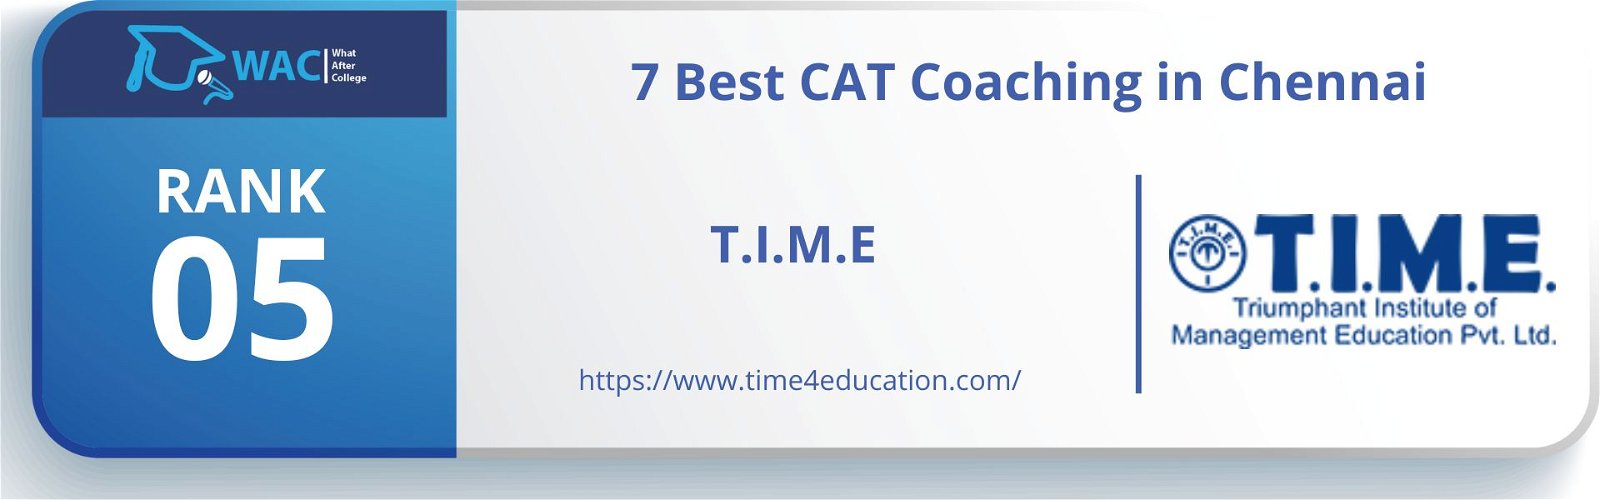 CAT Coaching in Chennai